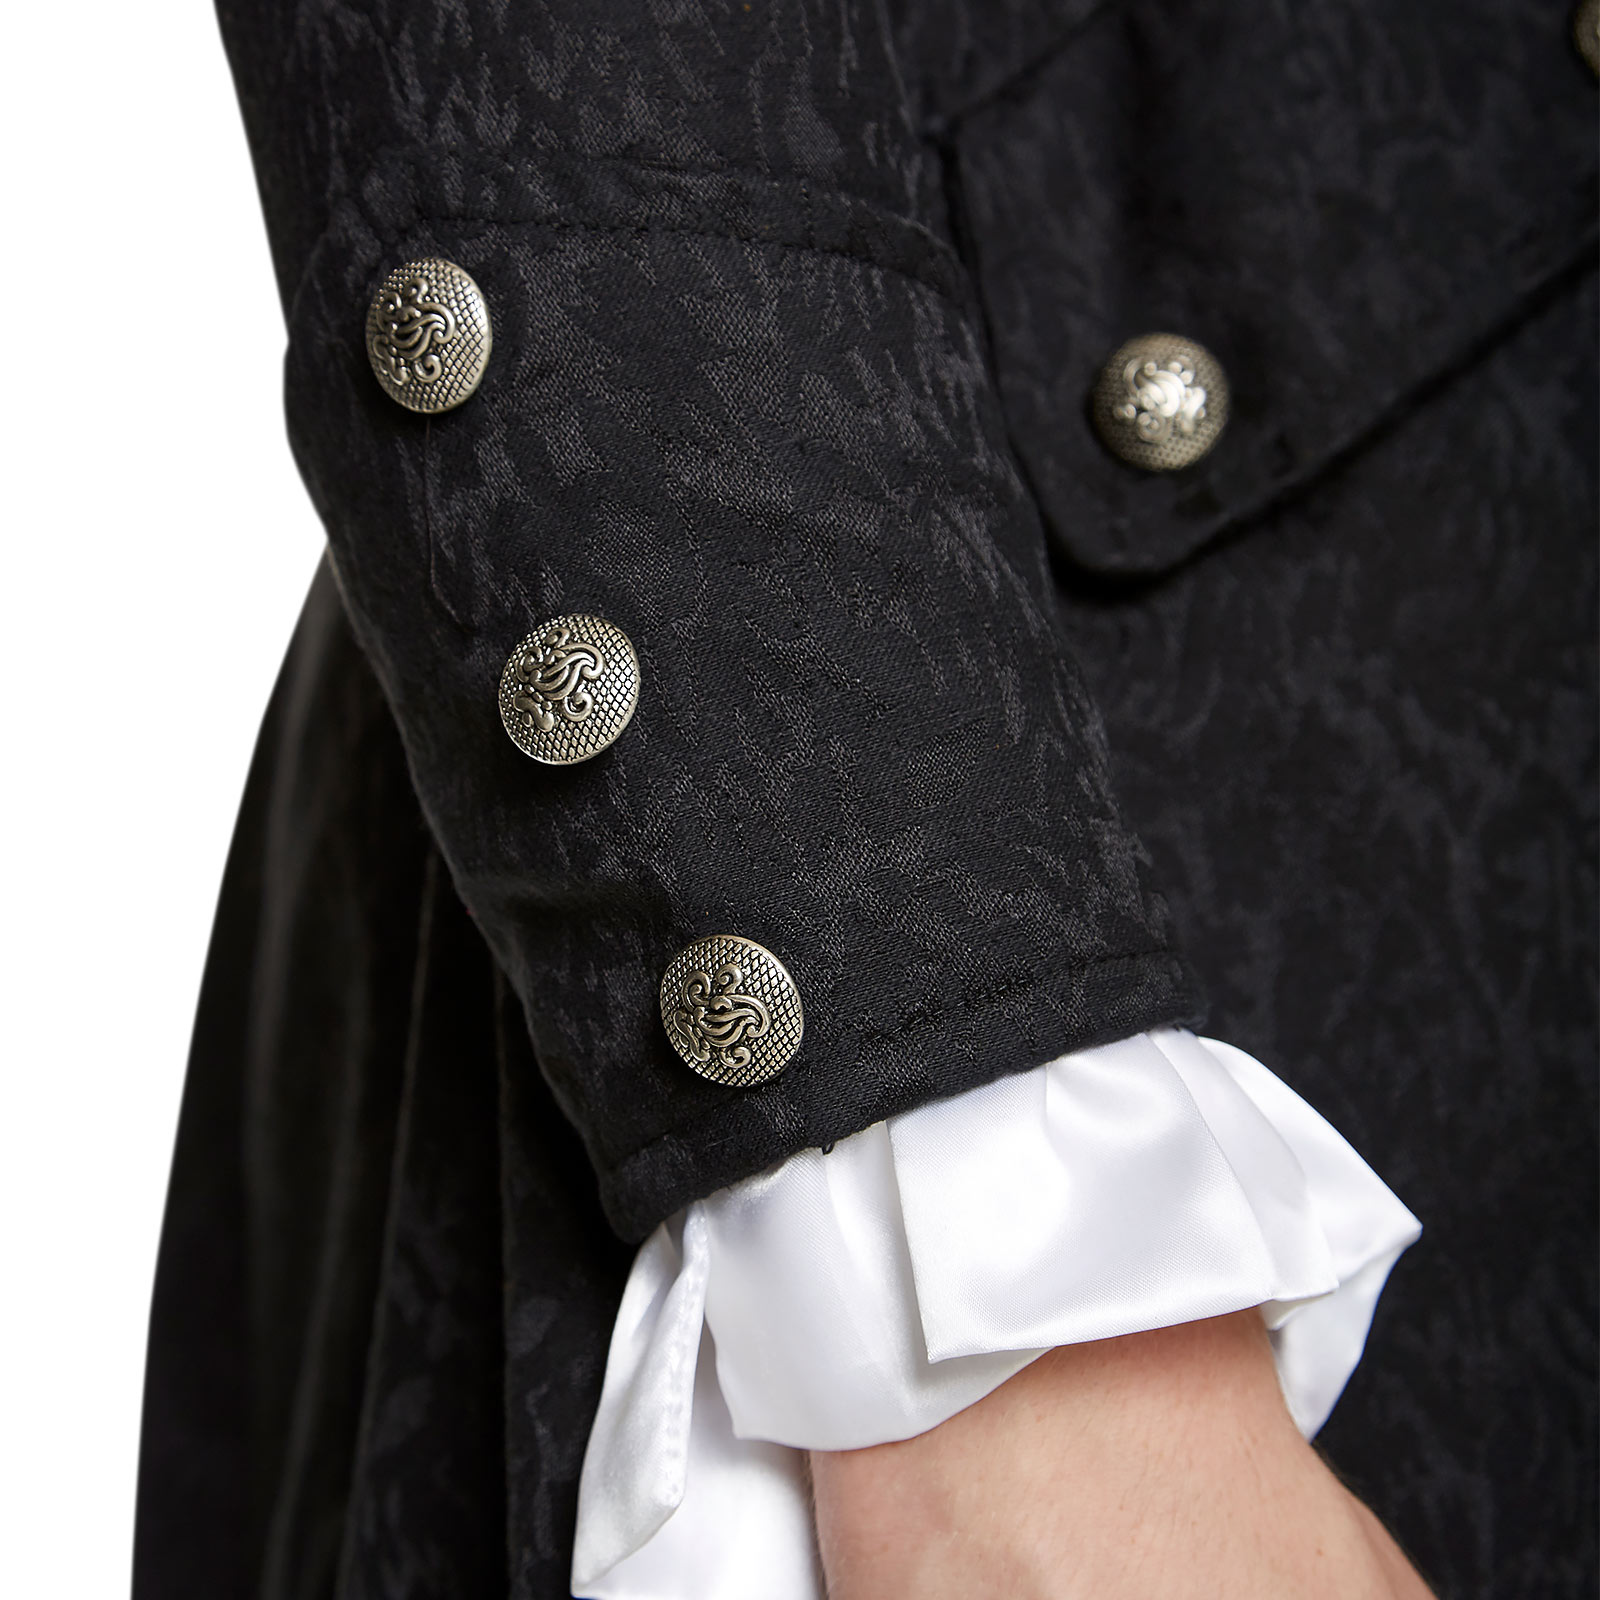 Frock-coat en brocart noir